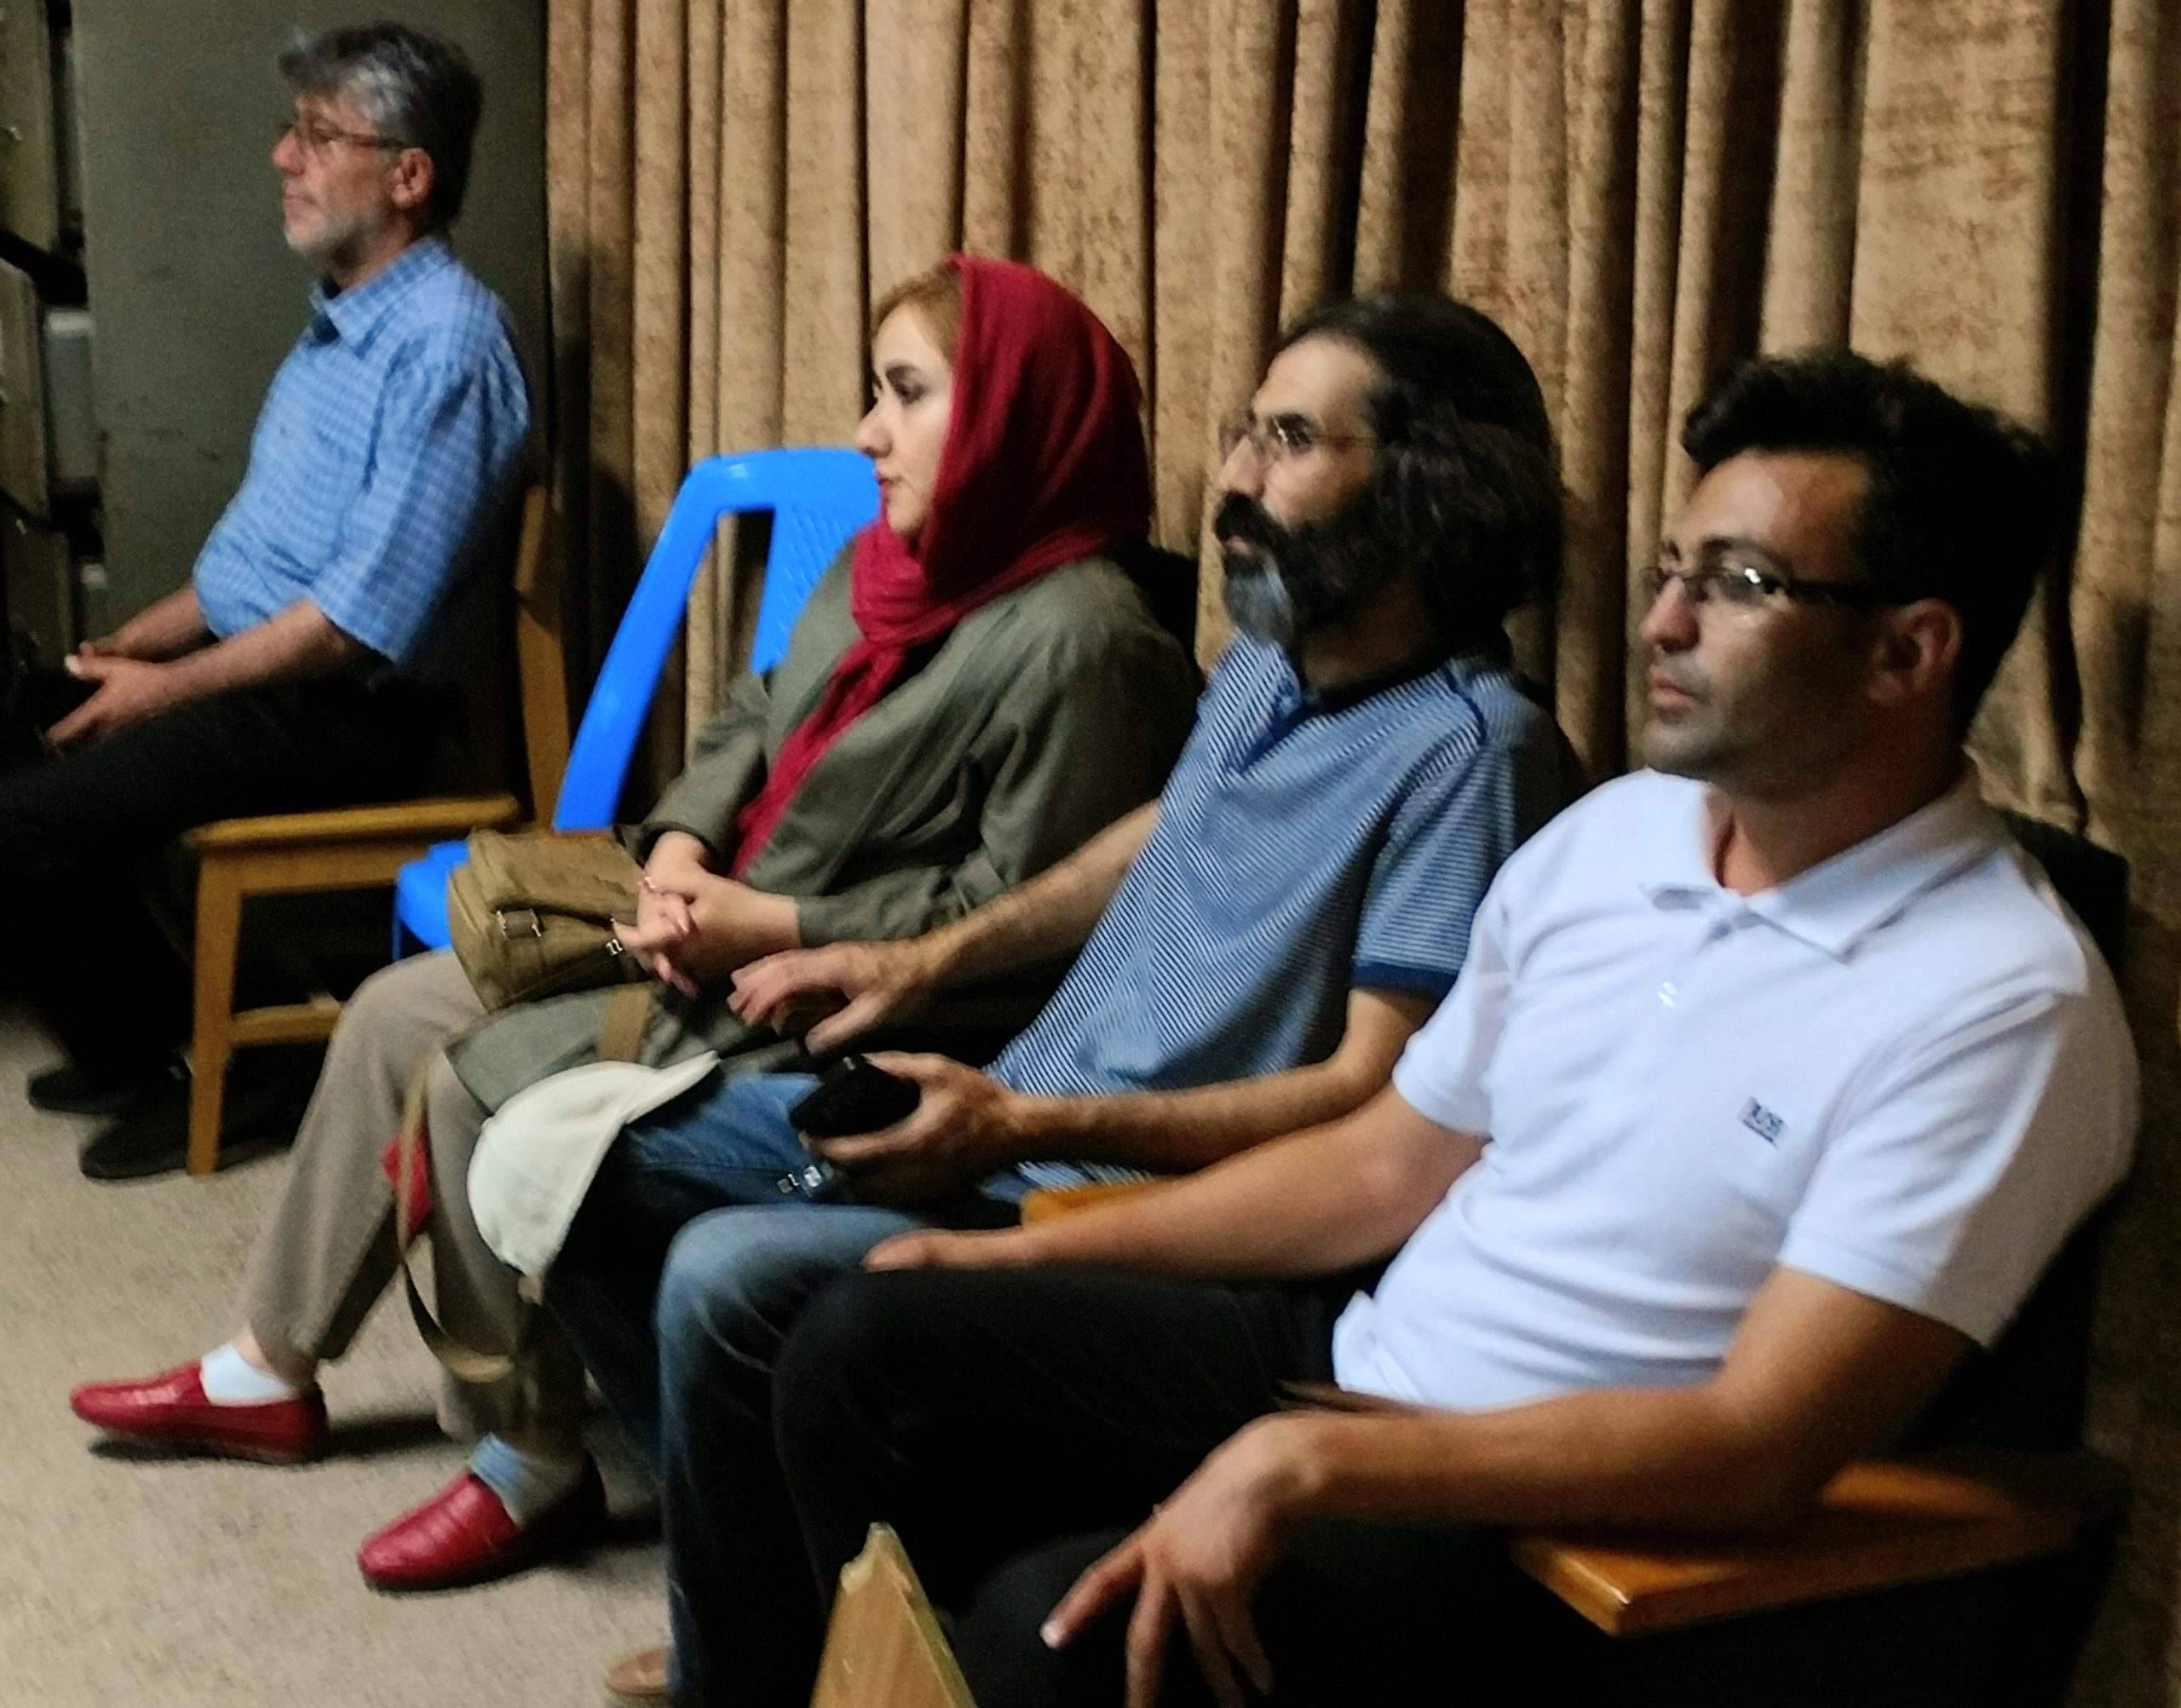 نشست صمیمانه استاد نیکانپور و استاد گرمچی برگزار شد | انجمن هنرهای تجسمی استان اردبیل ـ جامعه تخصصی هنرهای تجسمی